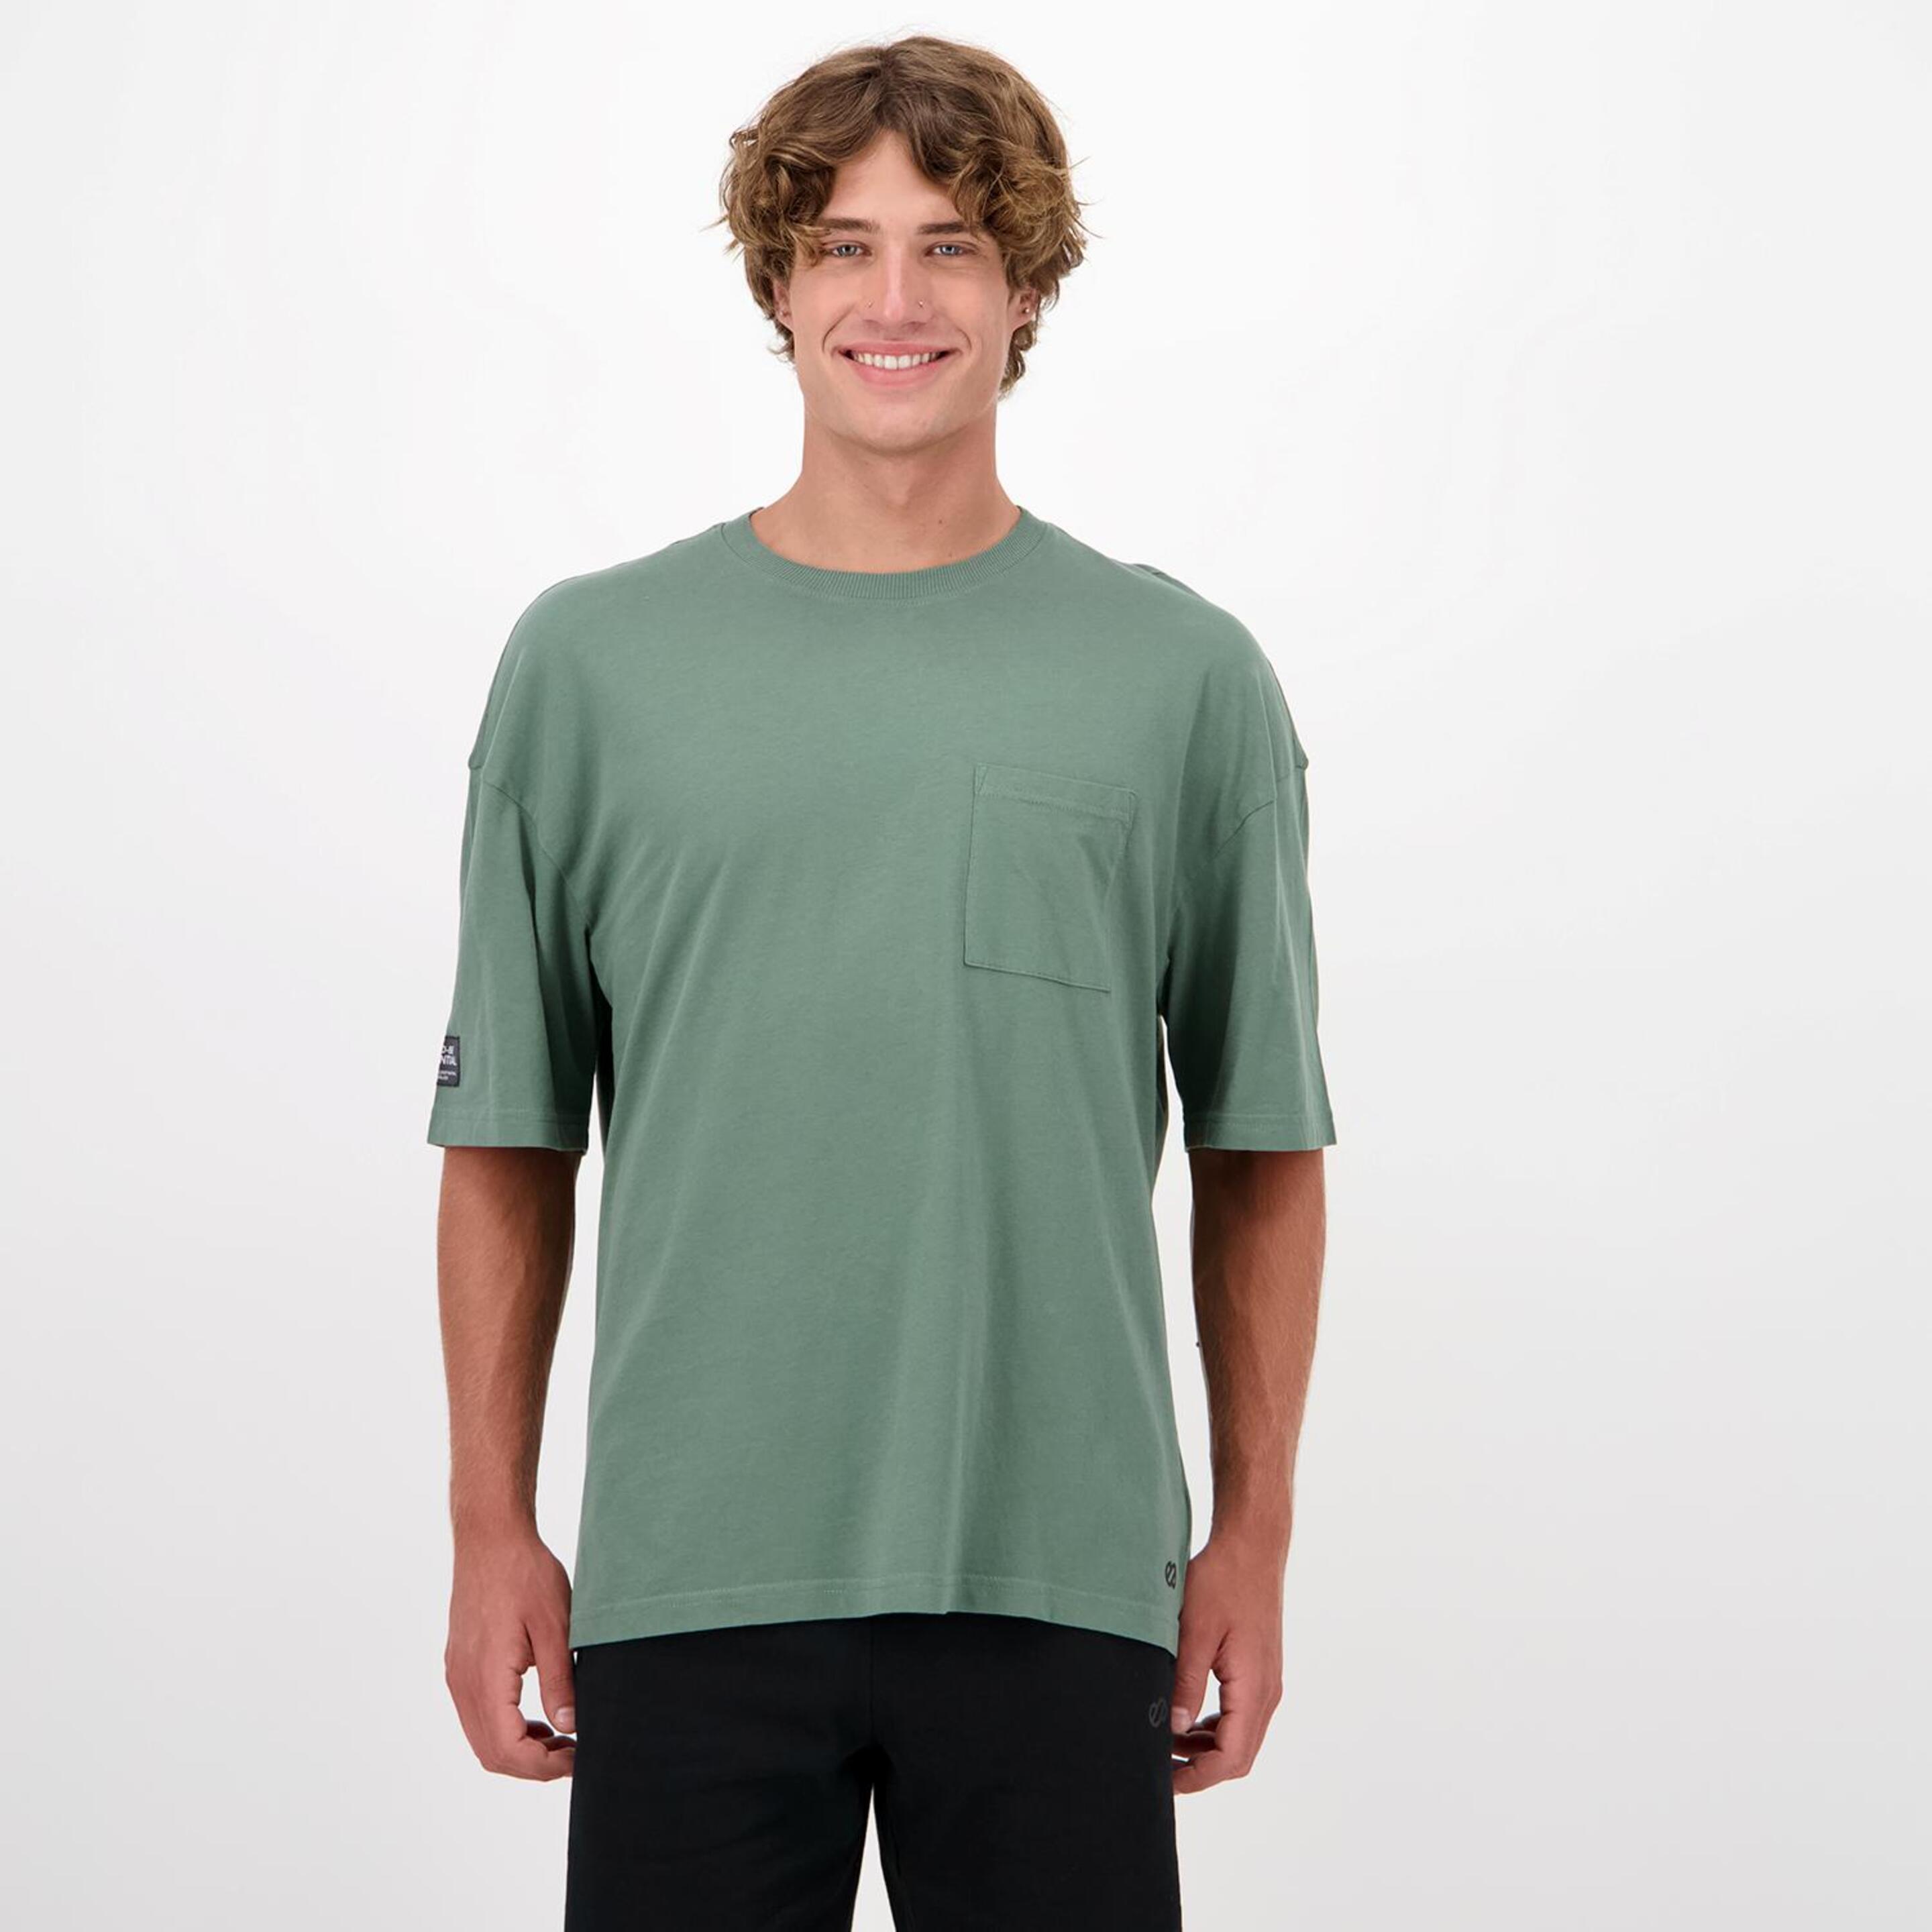 Silver Follow - verde - Camiseta Hombre